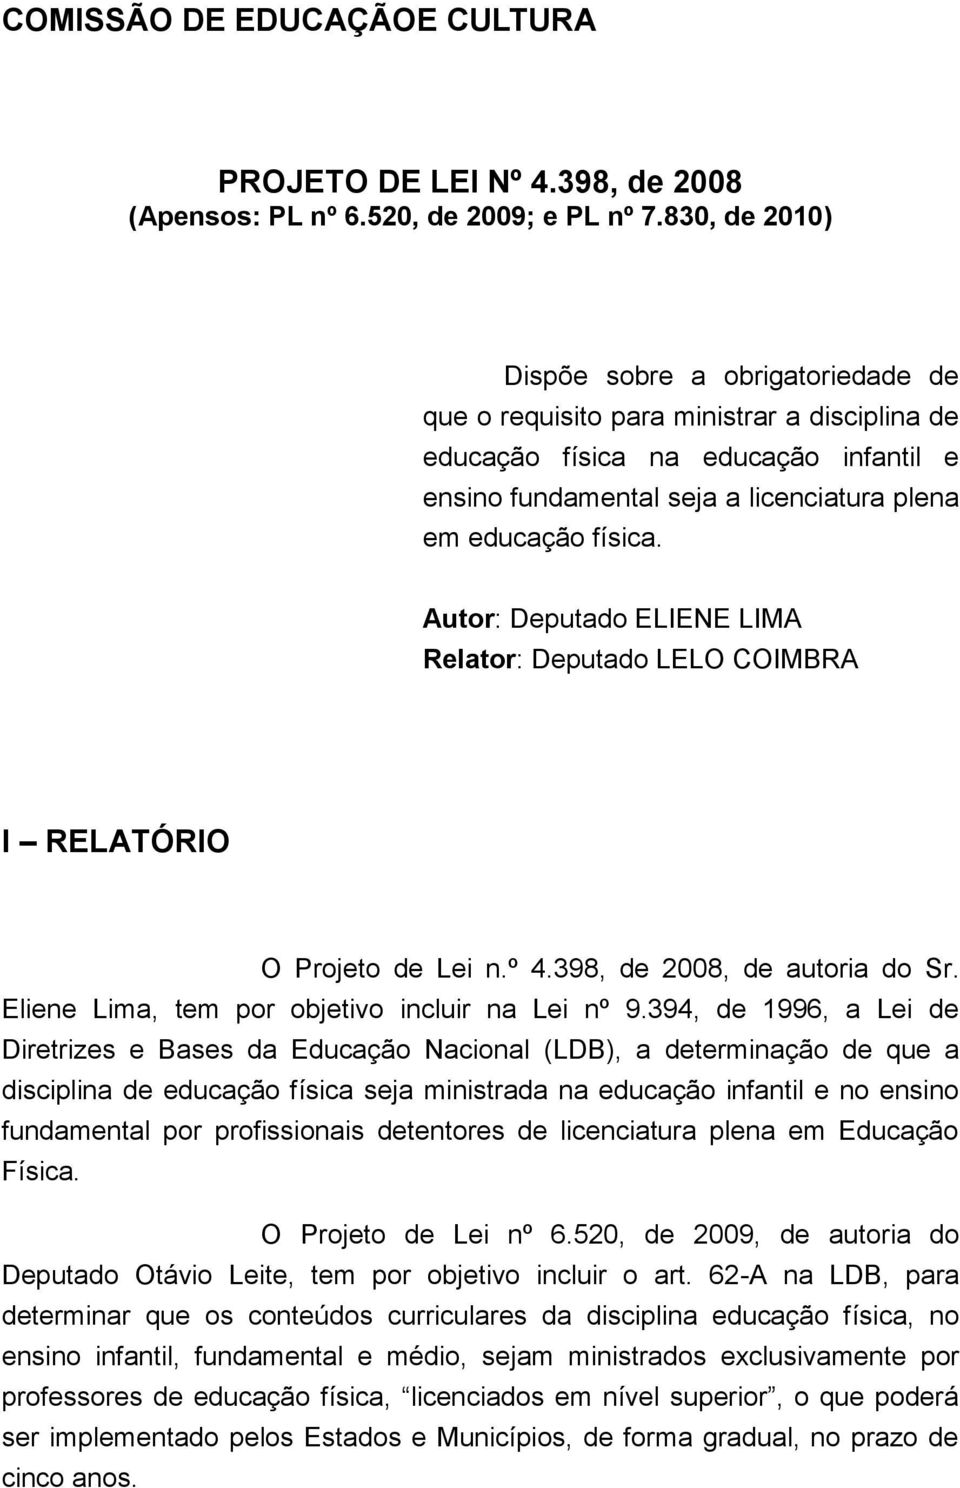 Autor: Deputado ELIENE LIMA Relator: Deputado LELO COIMBRA I RELATÓRIO O Projeto de Lei n.º 4.398, de 2008, de autoria do Sr. Eliene Lima, tem por objetivo incluir na Lei nº 9.